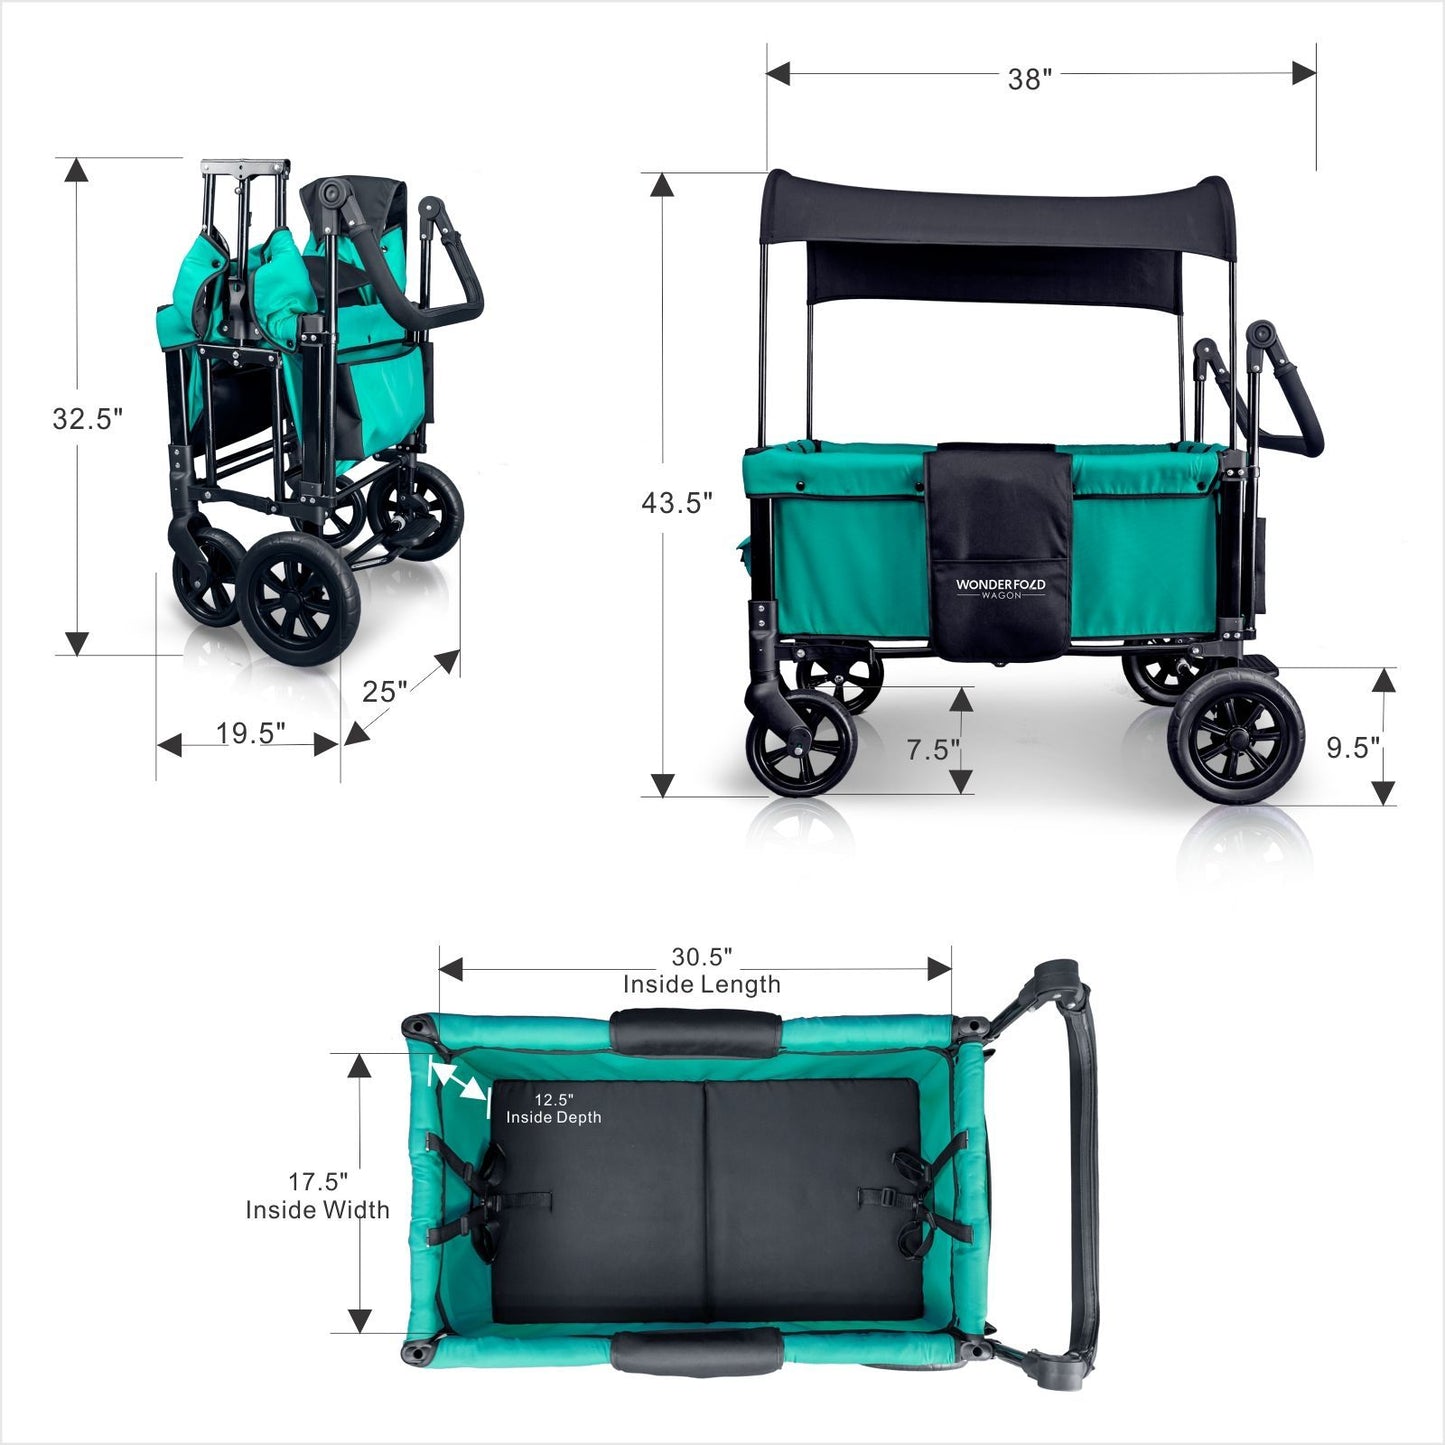 W1 Multi-Function Double Stroller Wagon-Wonderfold-Stroll Zone